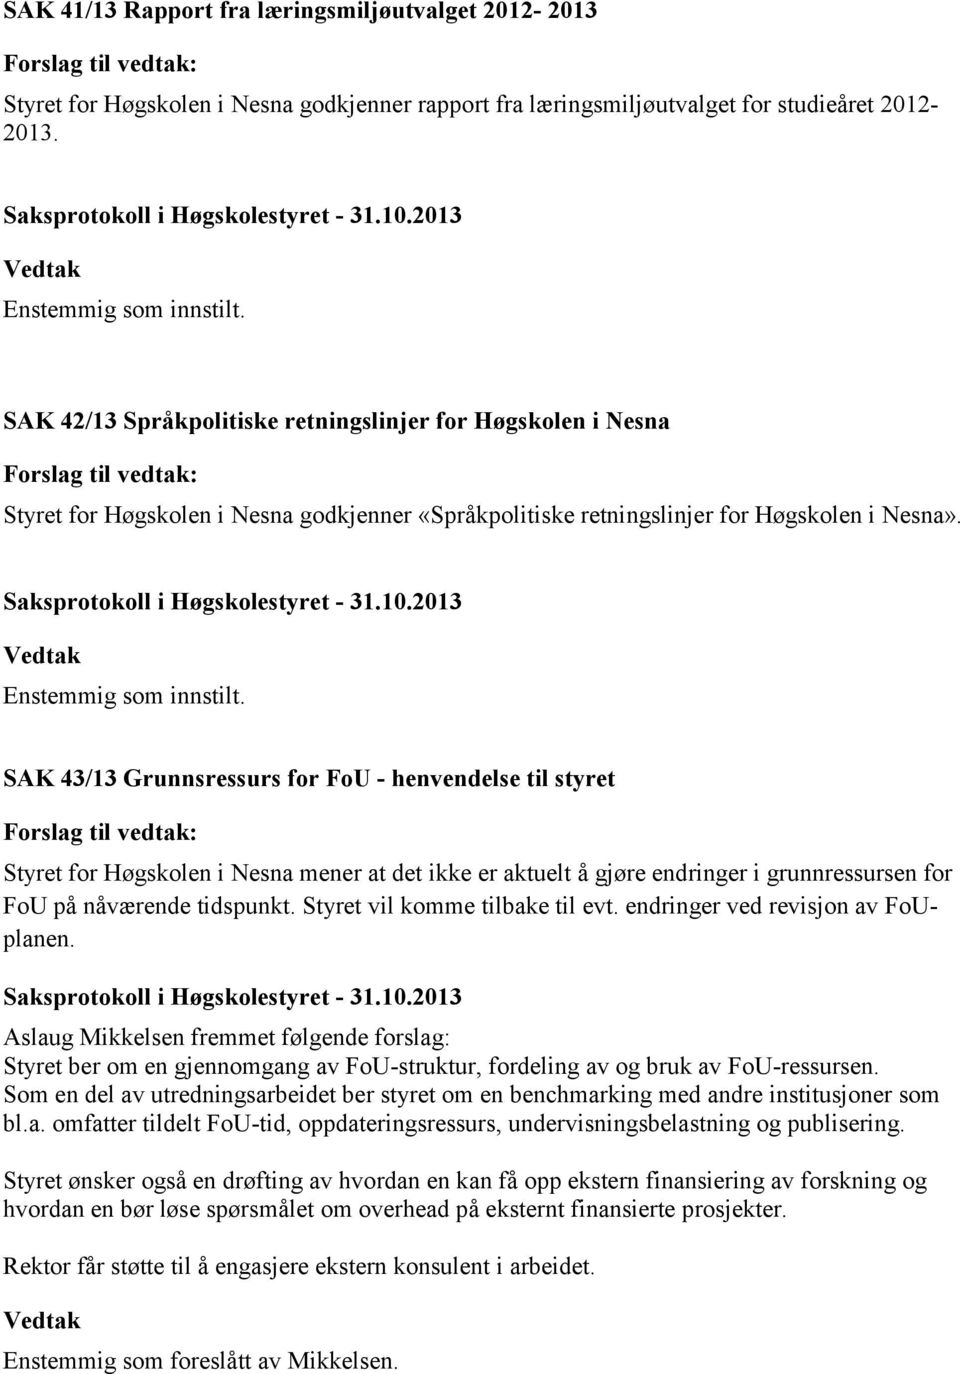 SAK 43/13 Grunnsressurs for FoU - henvendelse til styret Styret for Høgskolen i Nesna mener at det ikke er aktuelt å gjøre endringer i grunnressursen for FoU på nåværende tidspunkt.